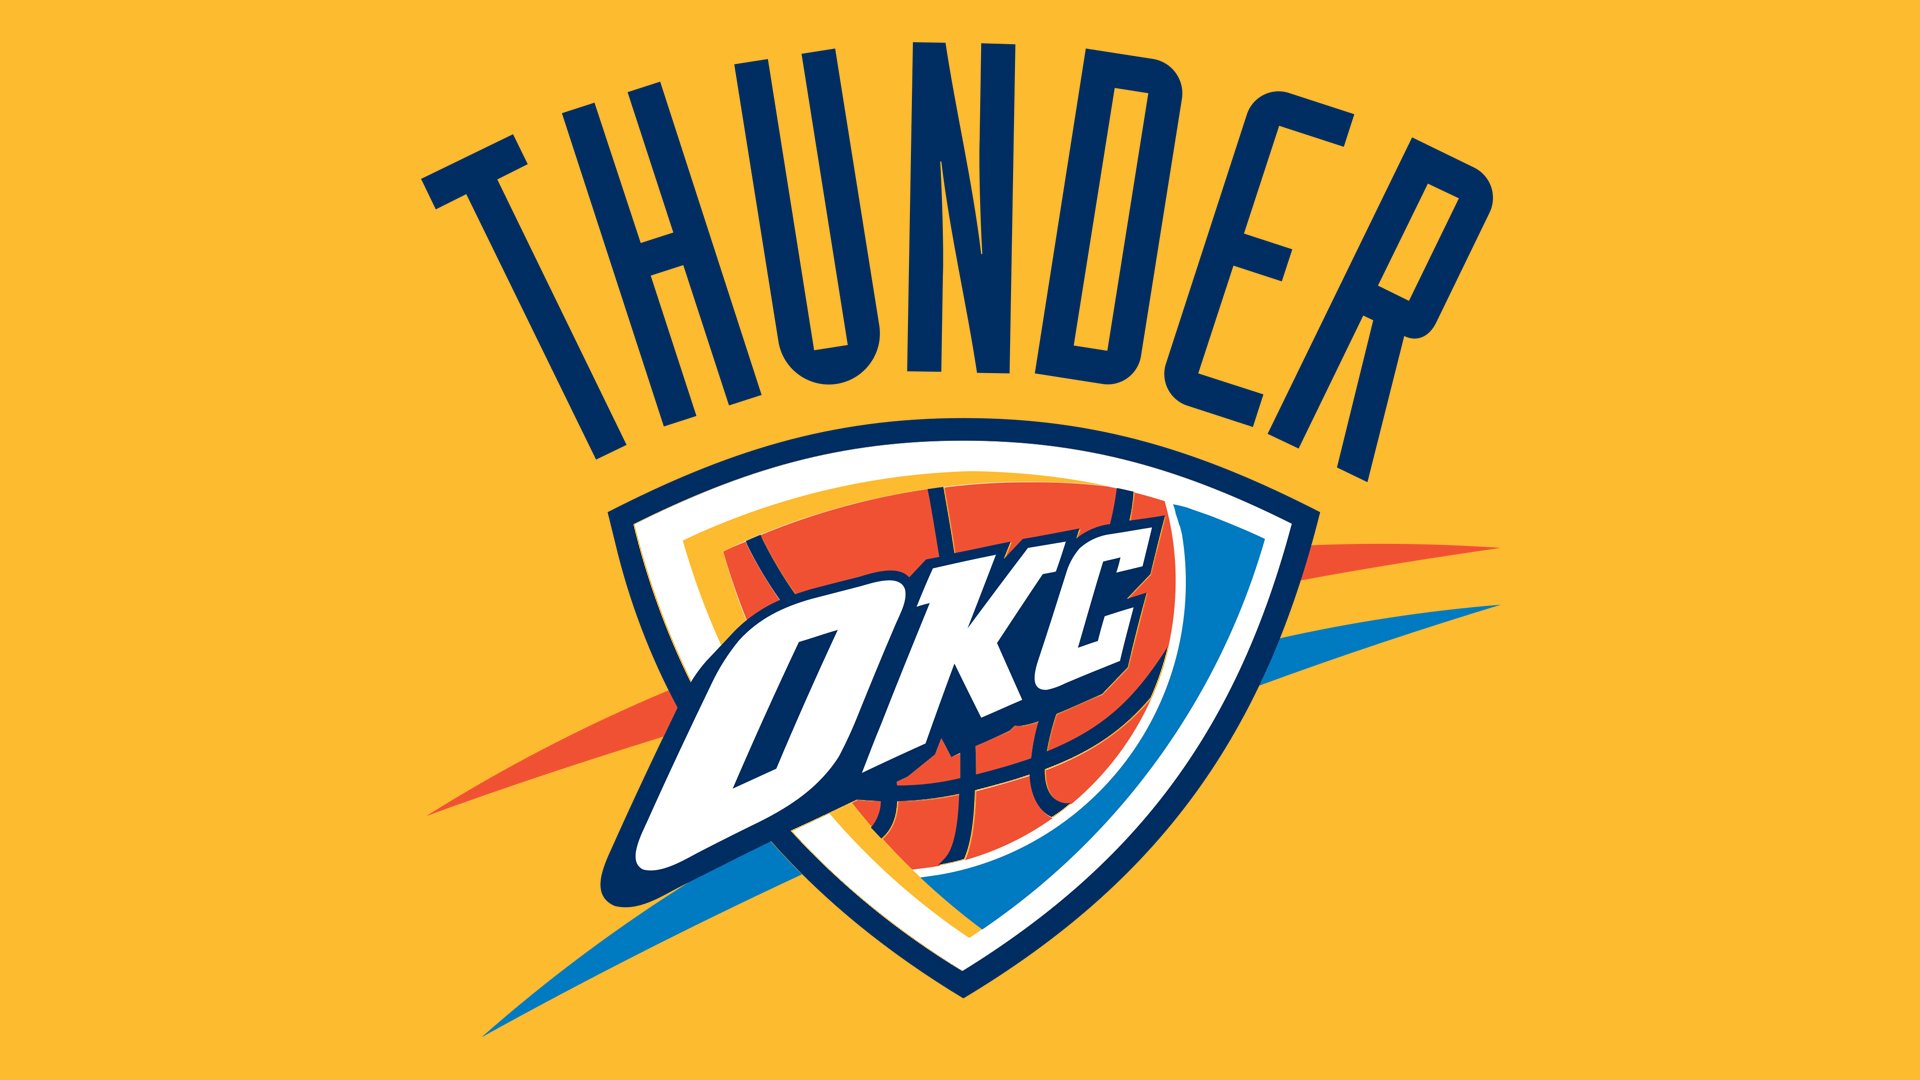 Oklahoma City Thunder Logo, Oklahoma City Thunder Symbol, Meaning, History and Evolution1920 x 1080